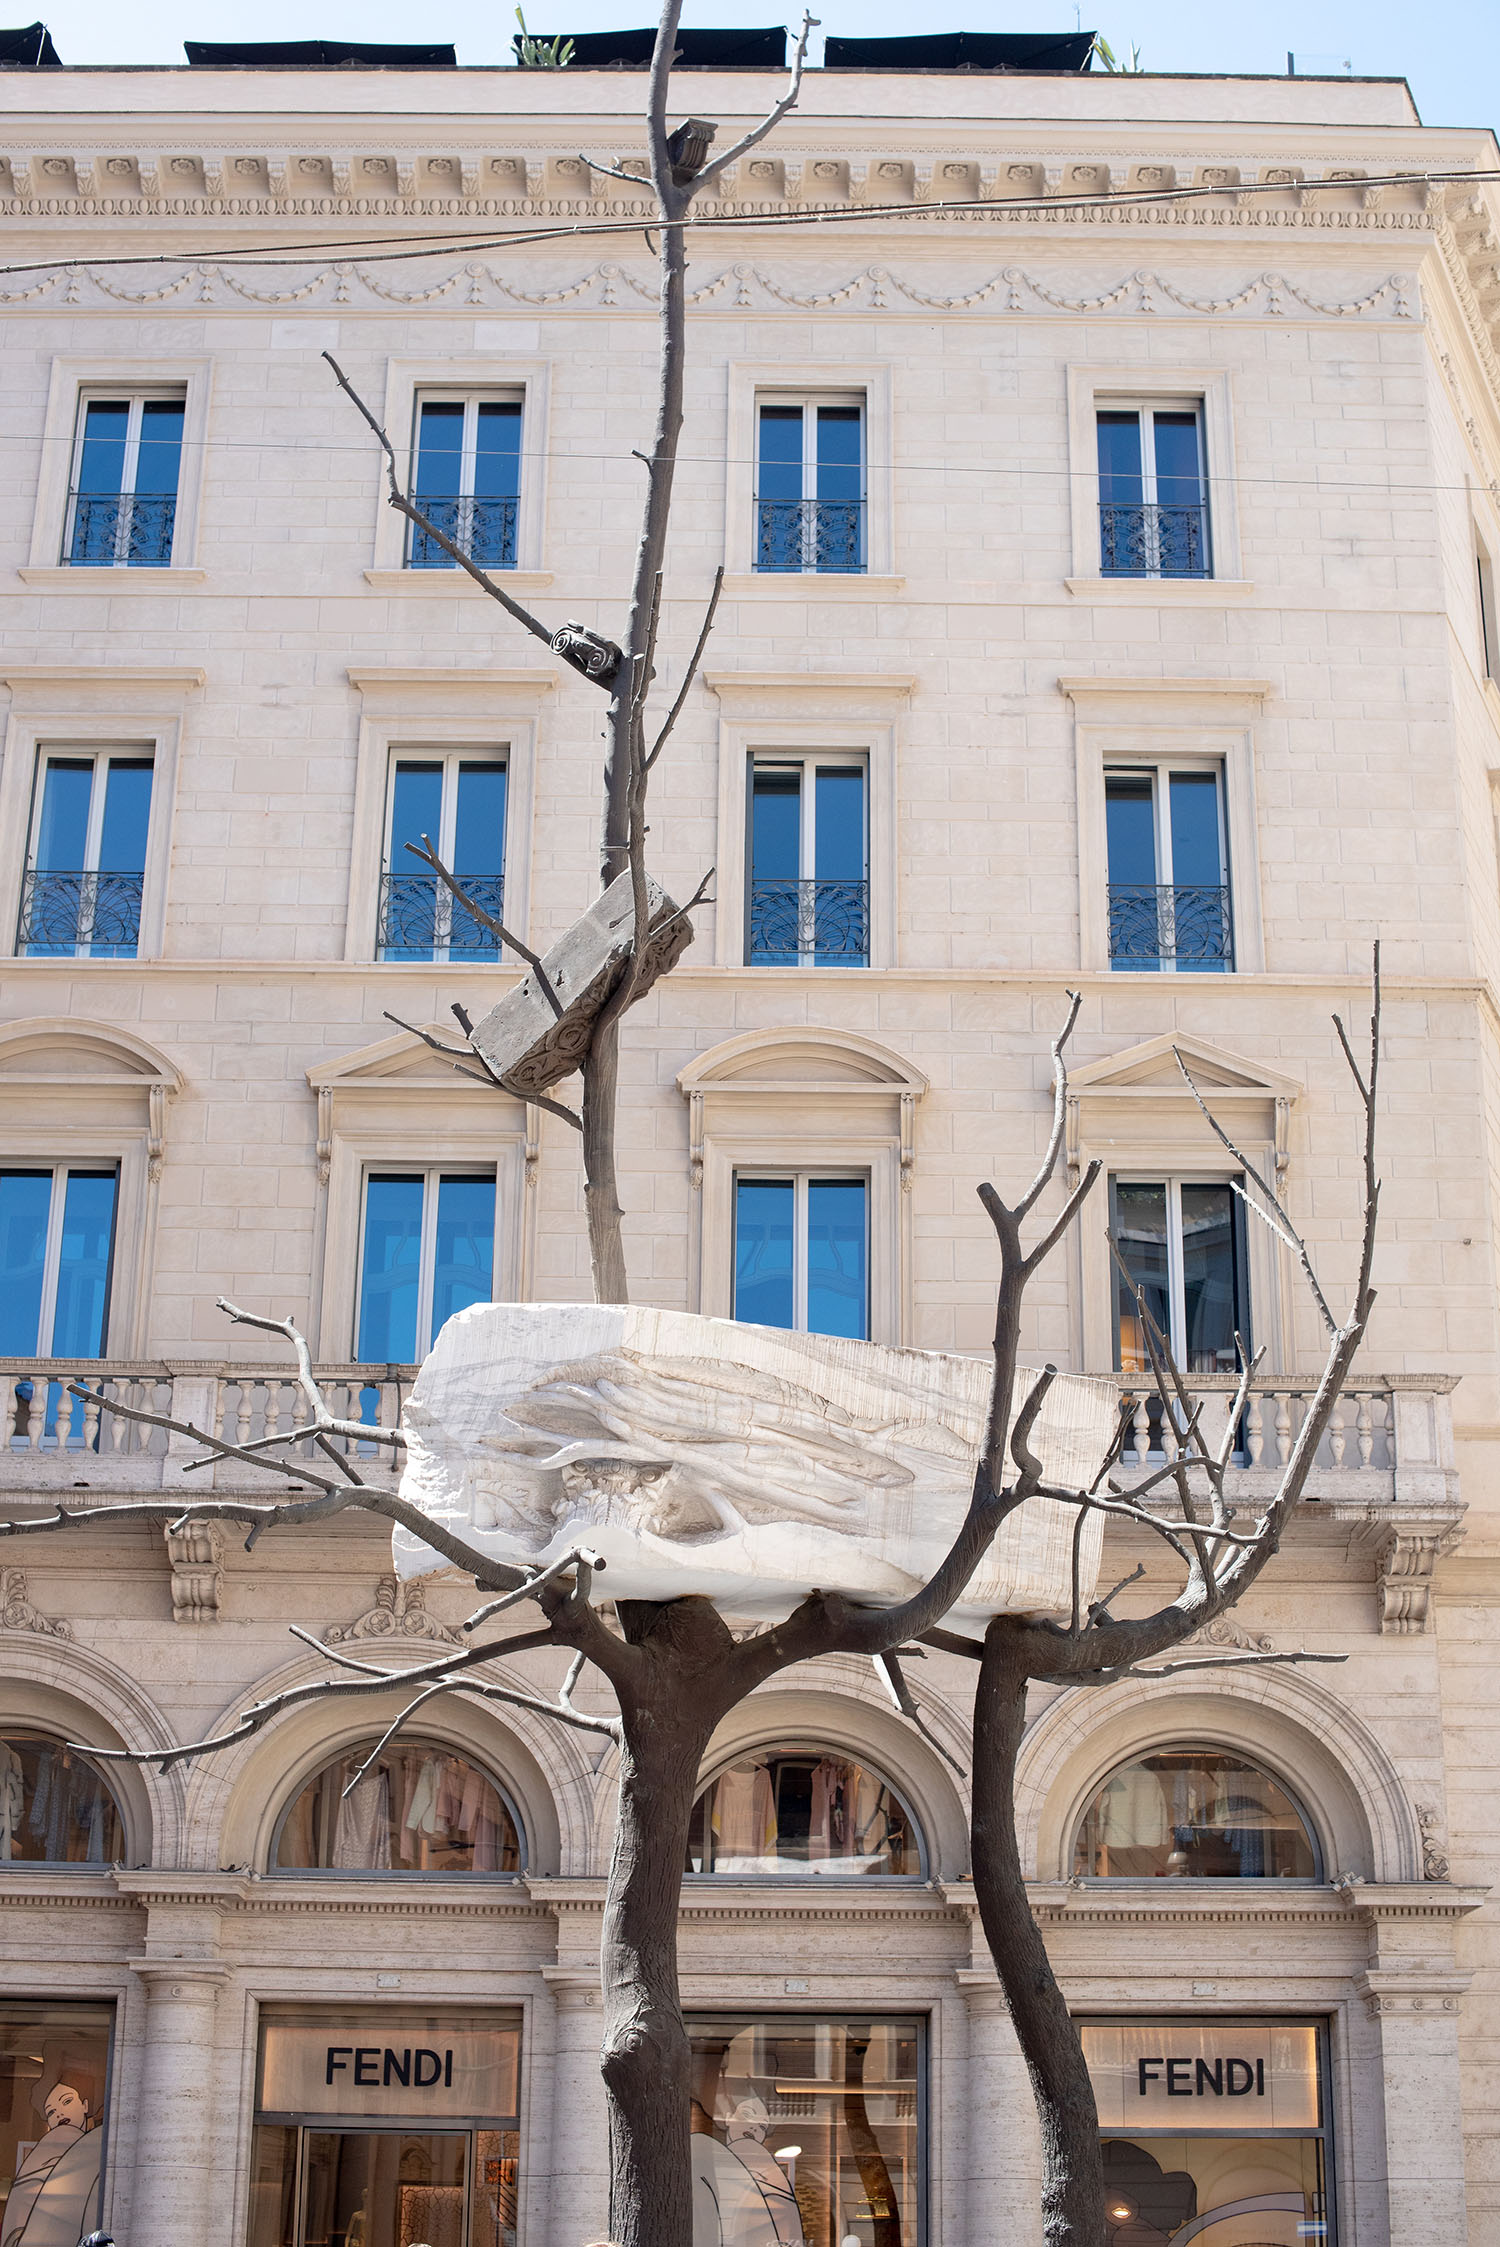 Coco & Vera - Public art installation in front of the Fendi boutique in Rome, Italy